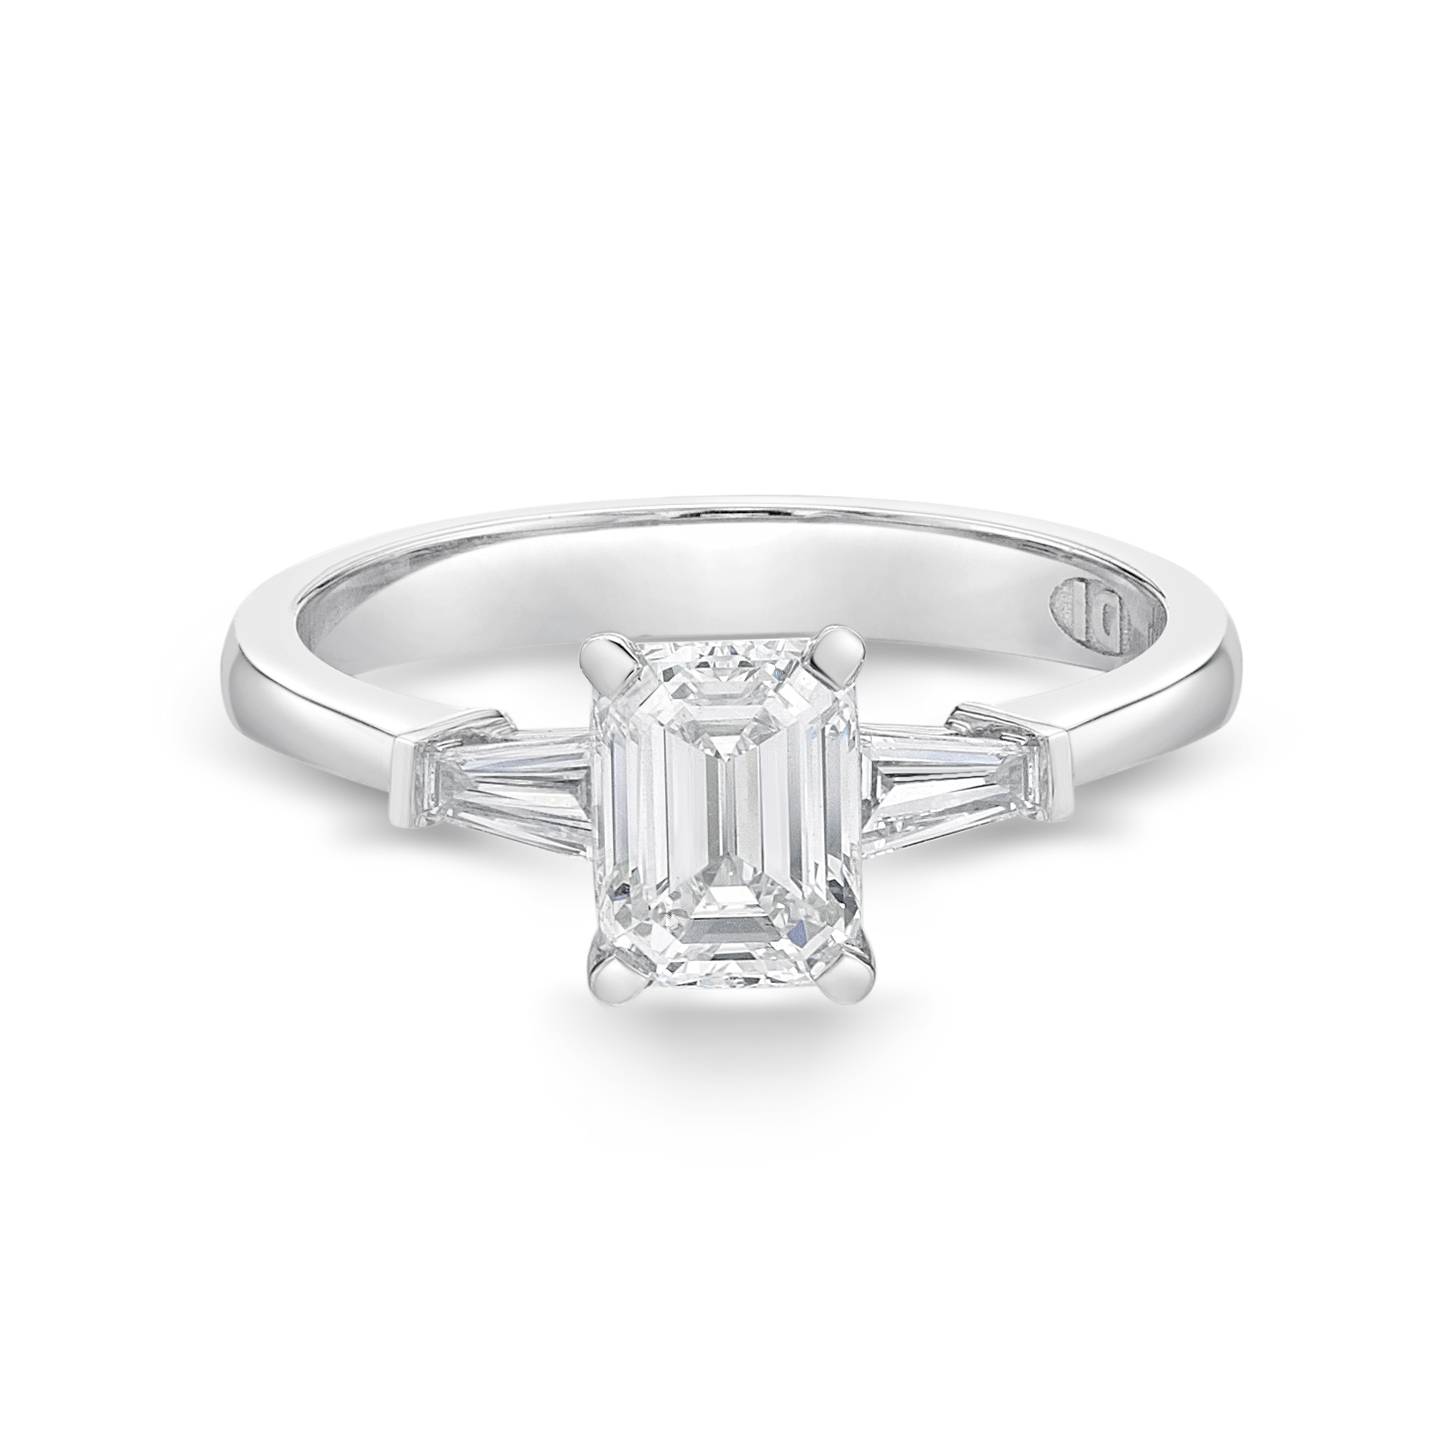 Elara – Emerald Cut Diamond Engagement Ring